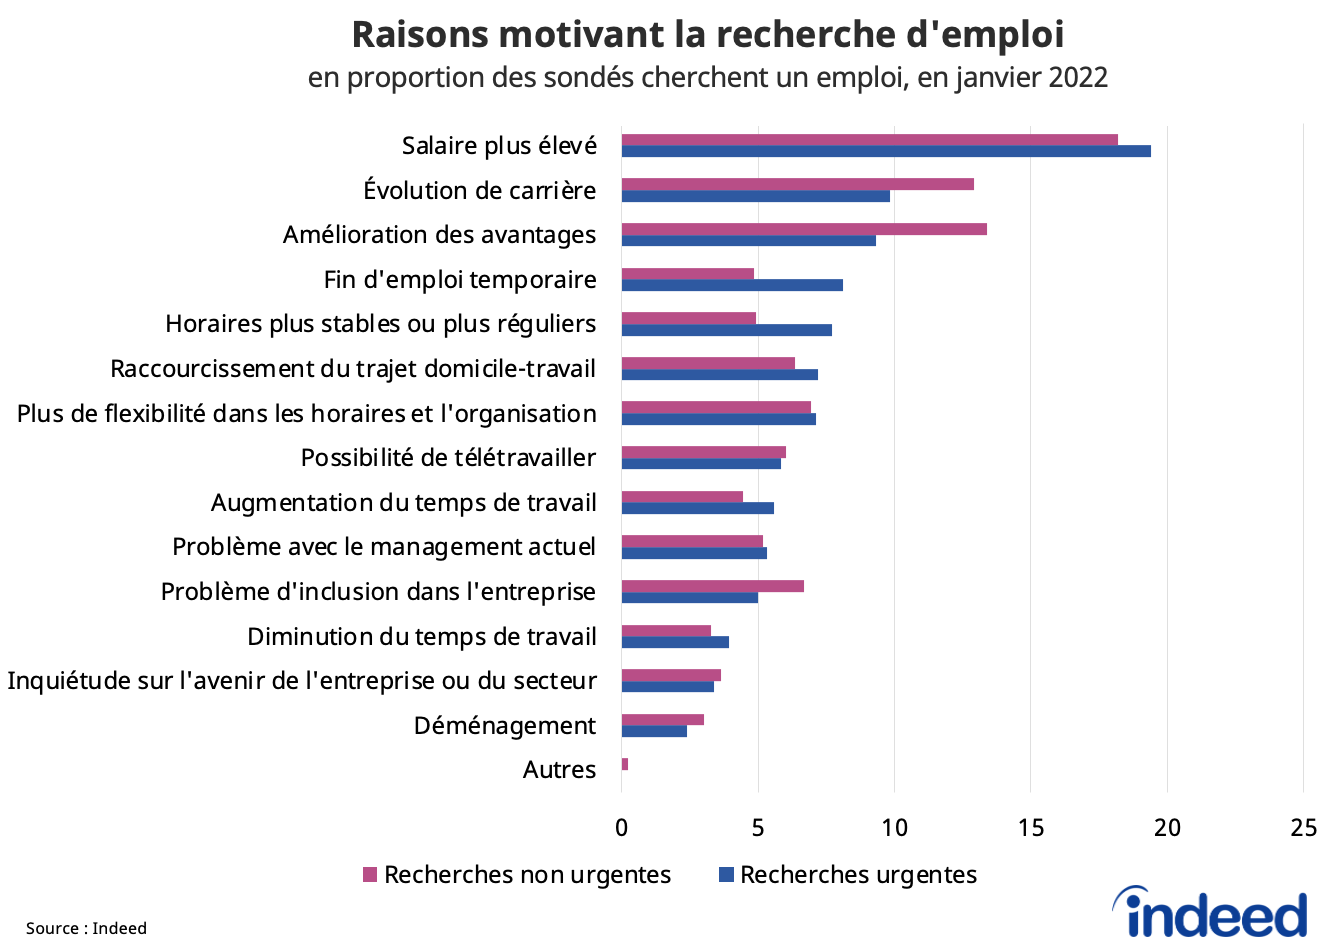 Cet histogramme présente les raisons motivant la recherche d’emploi, en proportion des sondés qui cherchent un emploi, en janvier 2022. 